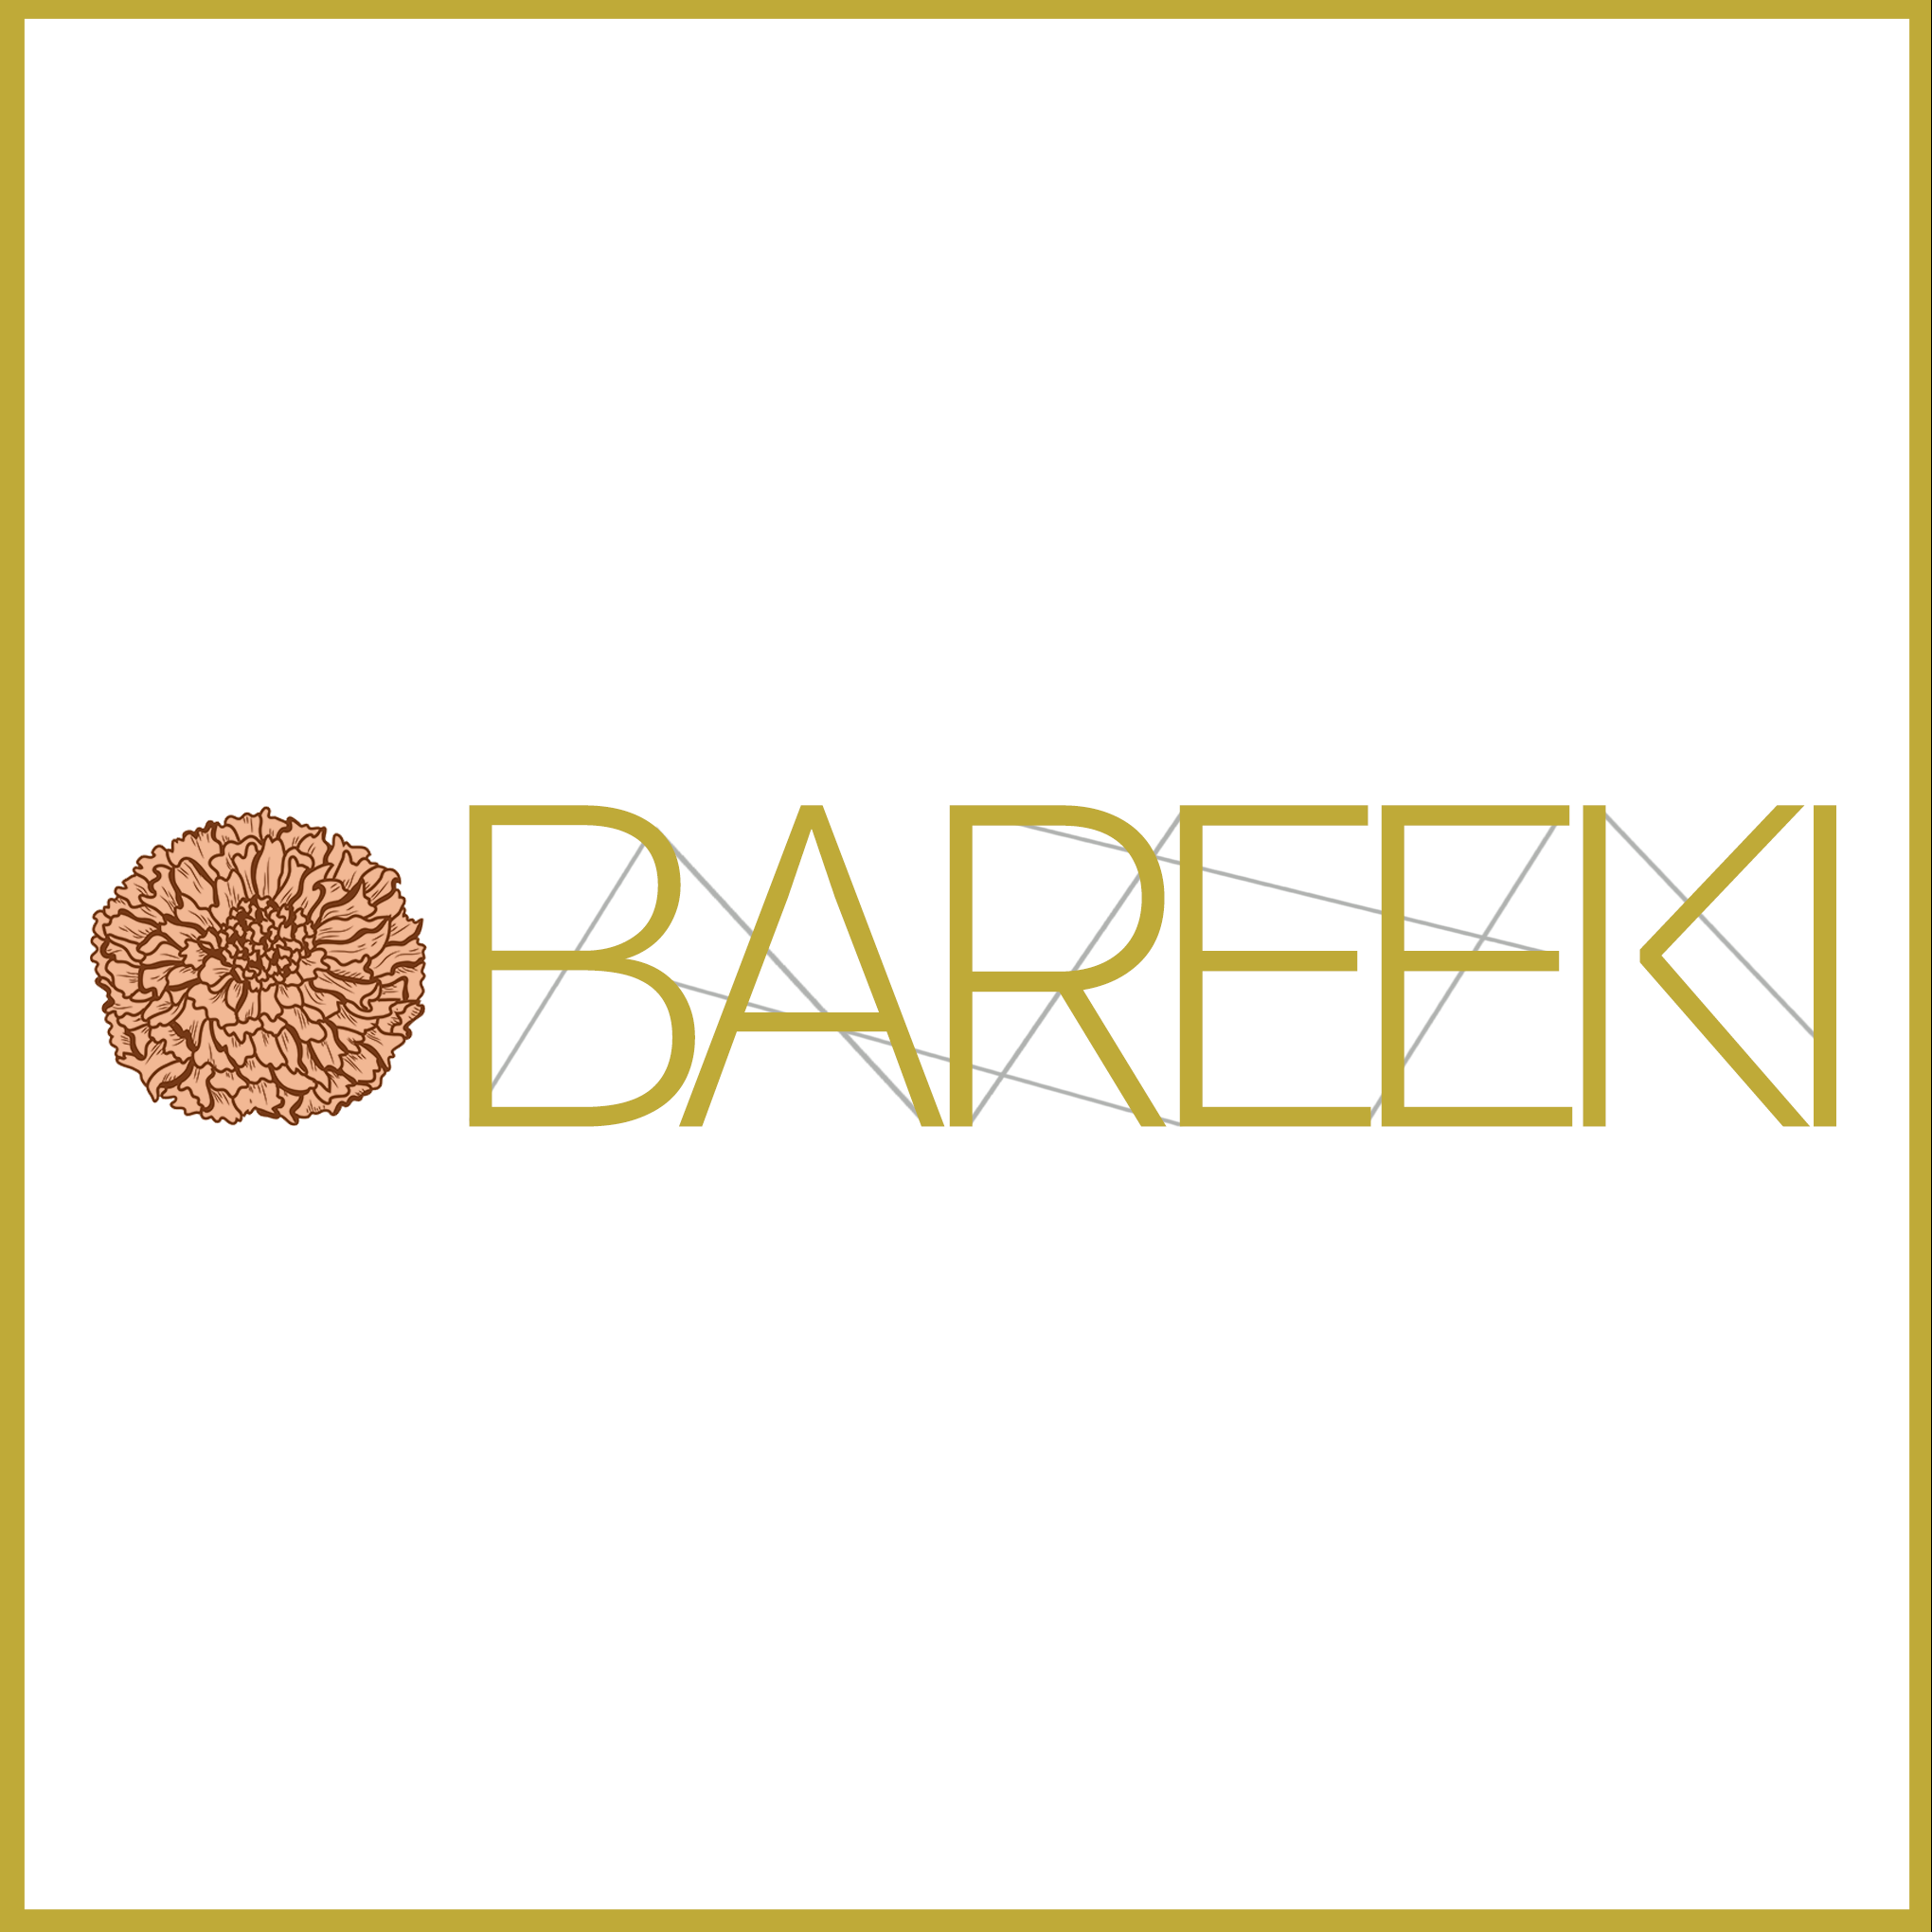 bareeki